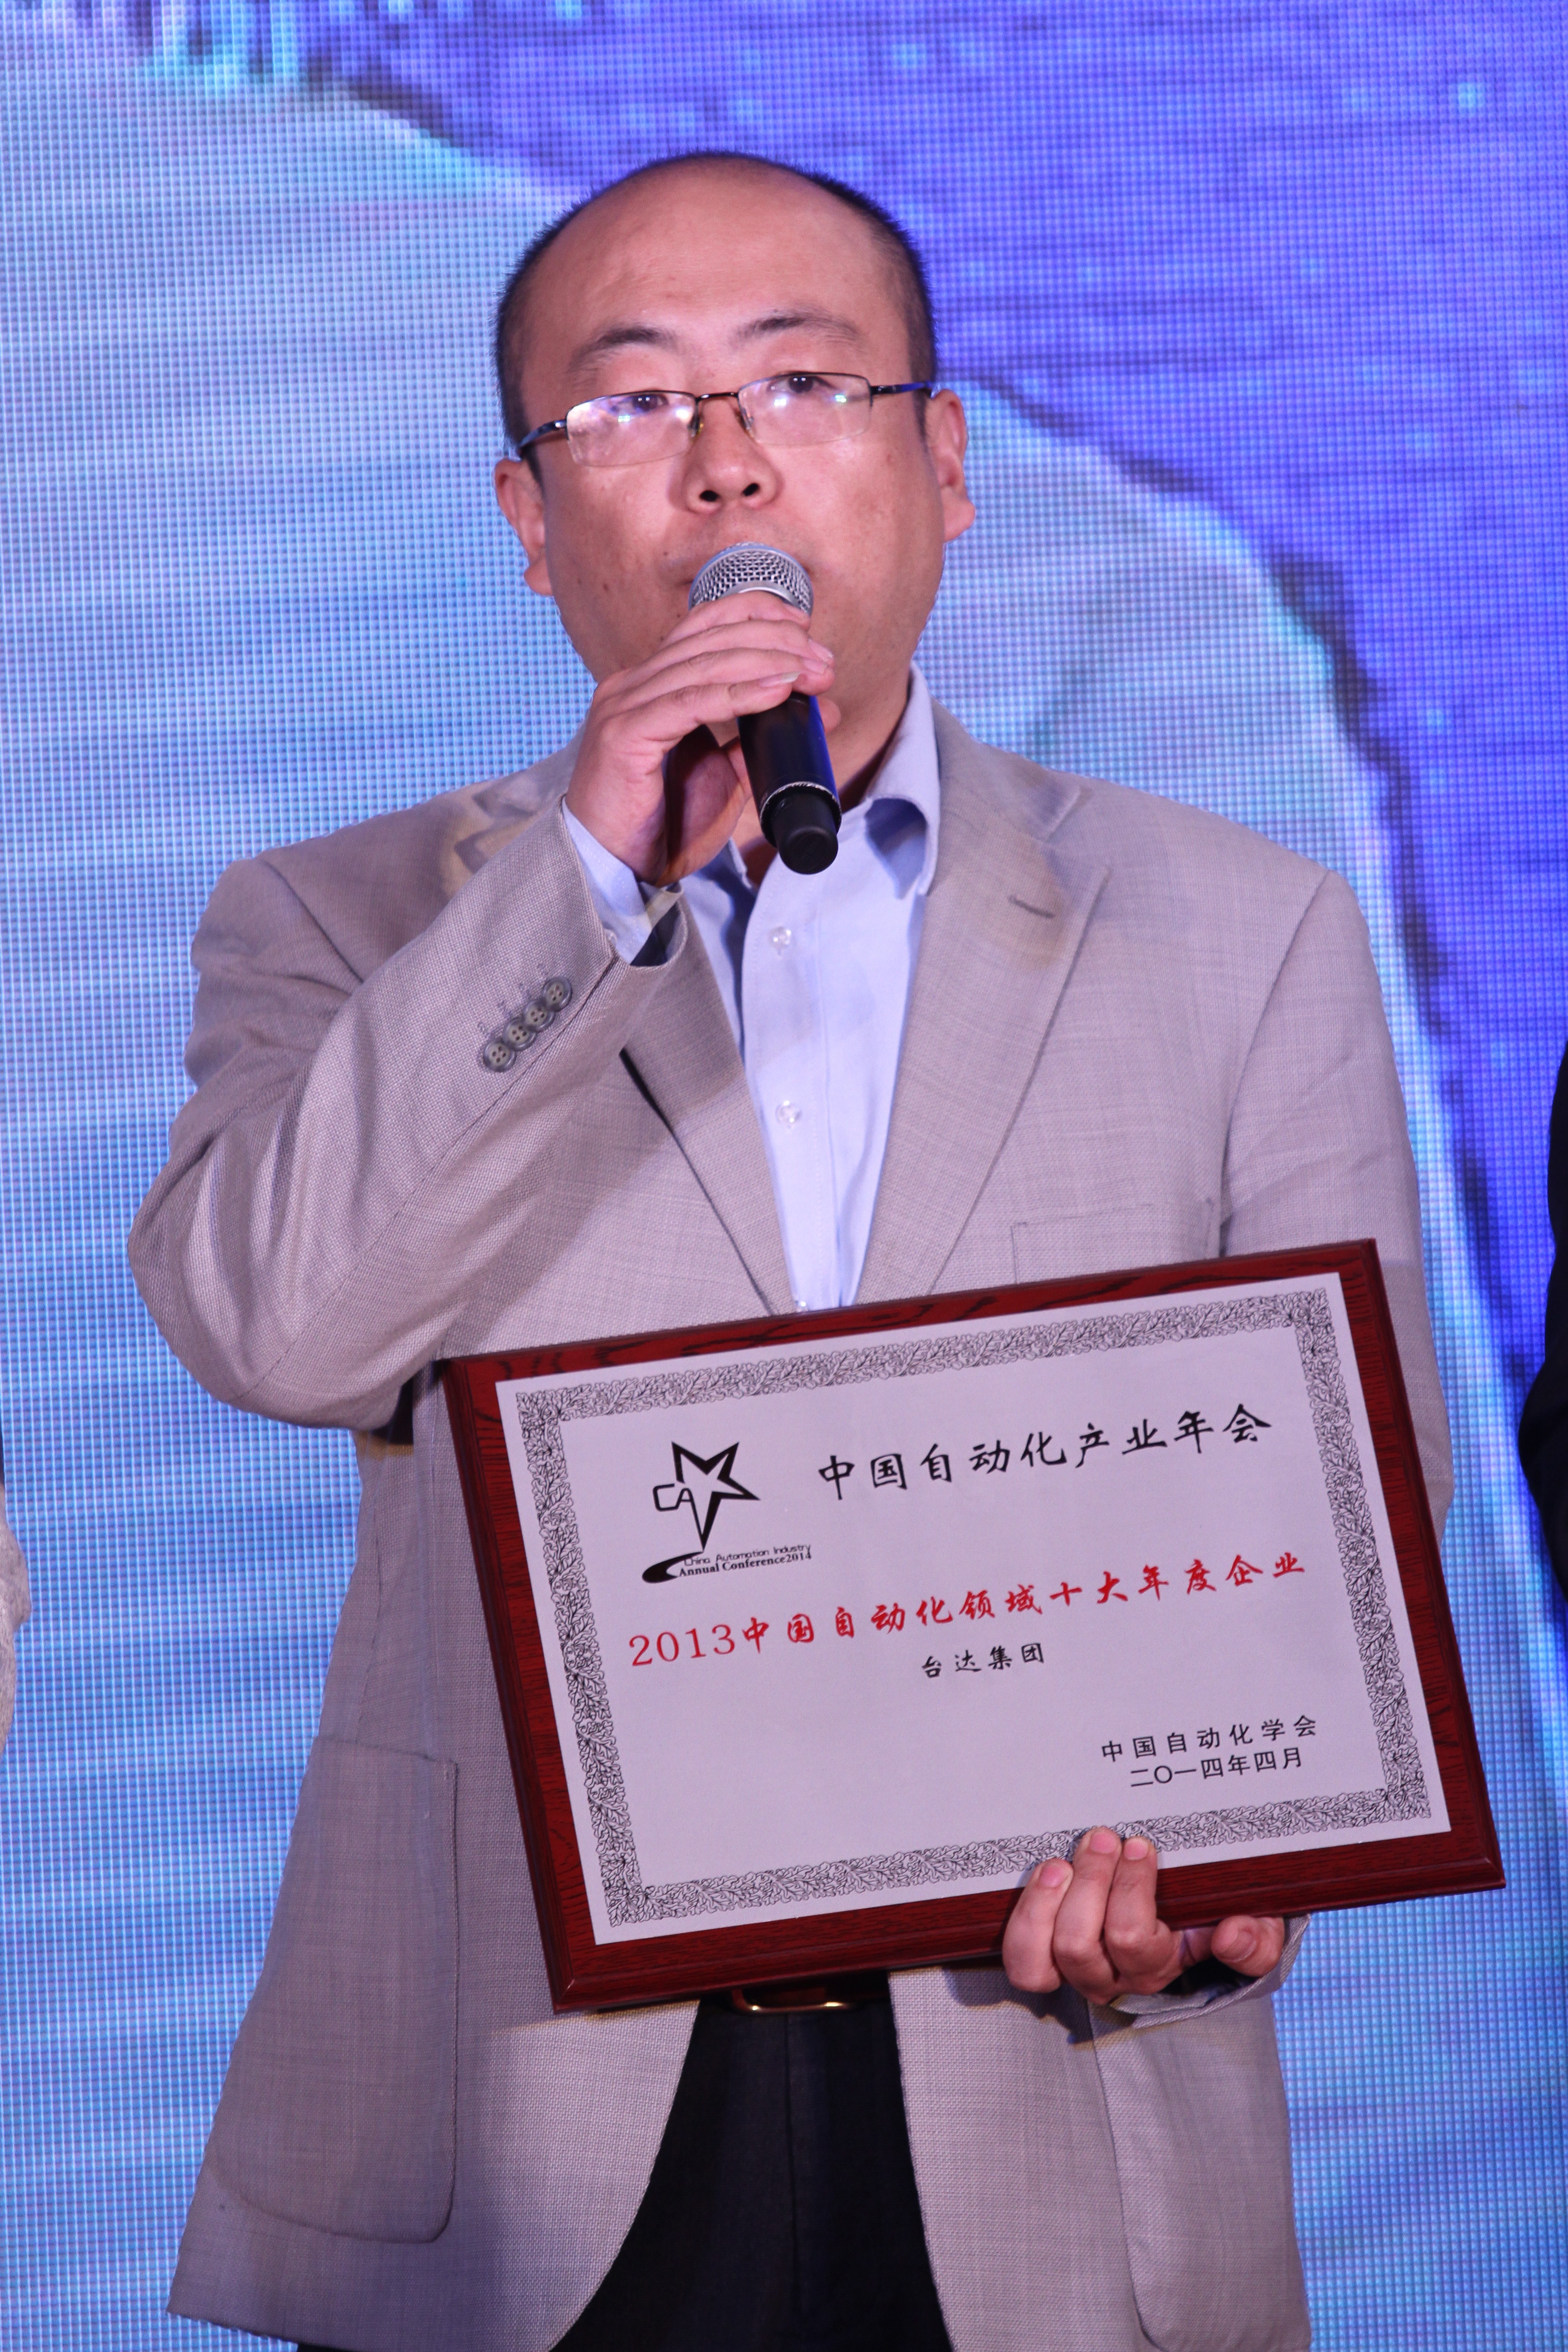 台达连续9年荣获“中国自动化产业年会”大奖